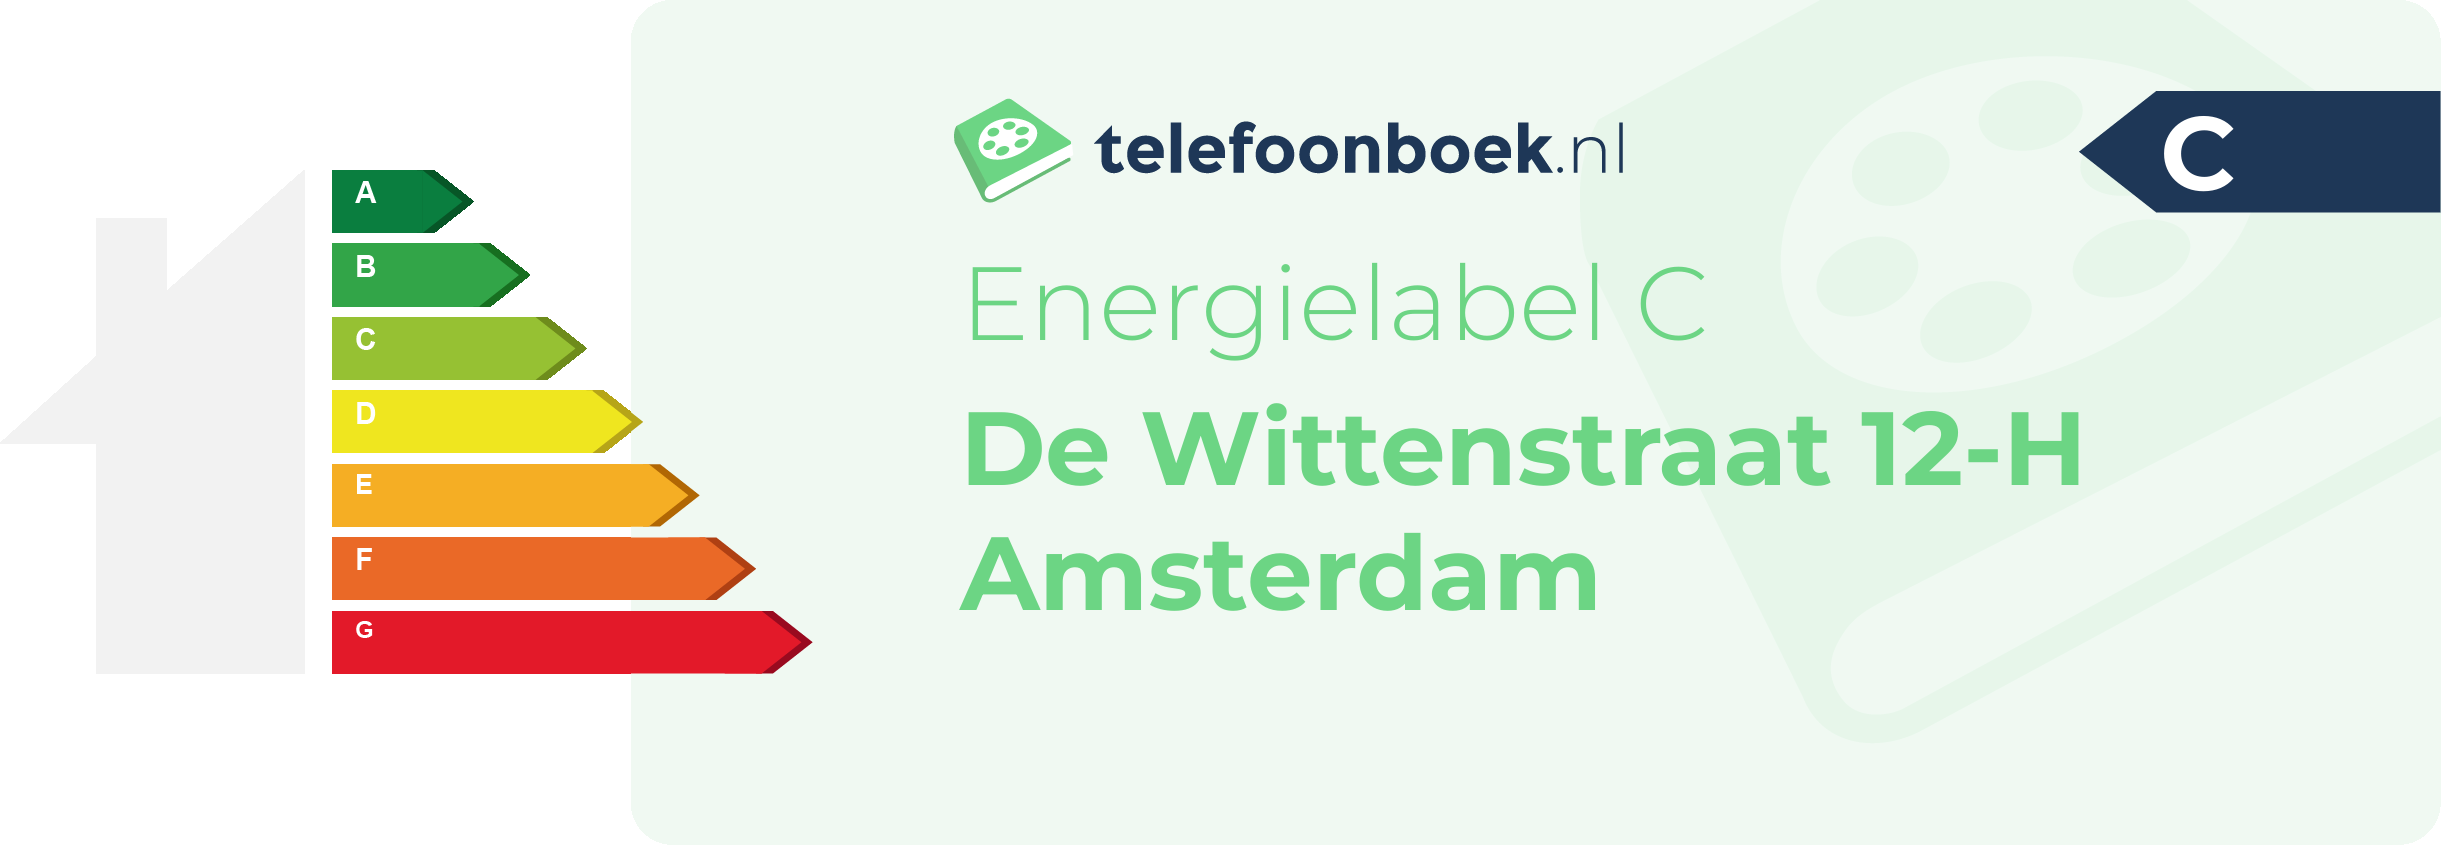 Energielabel De Wittenstraat 12-H Amsterdam